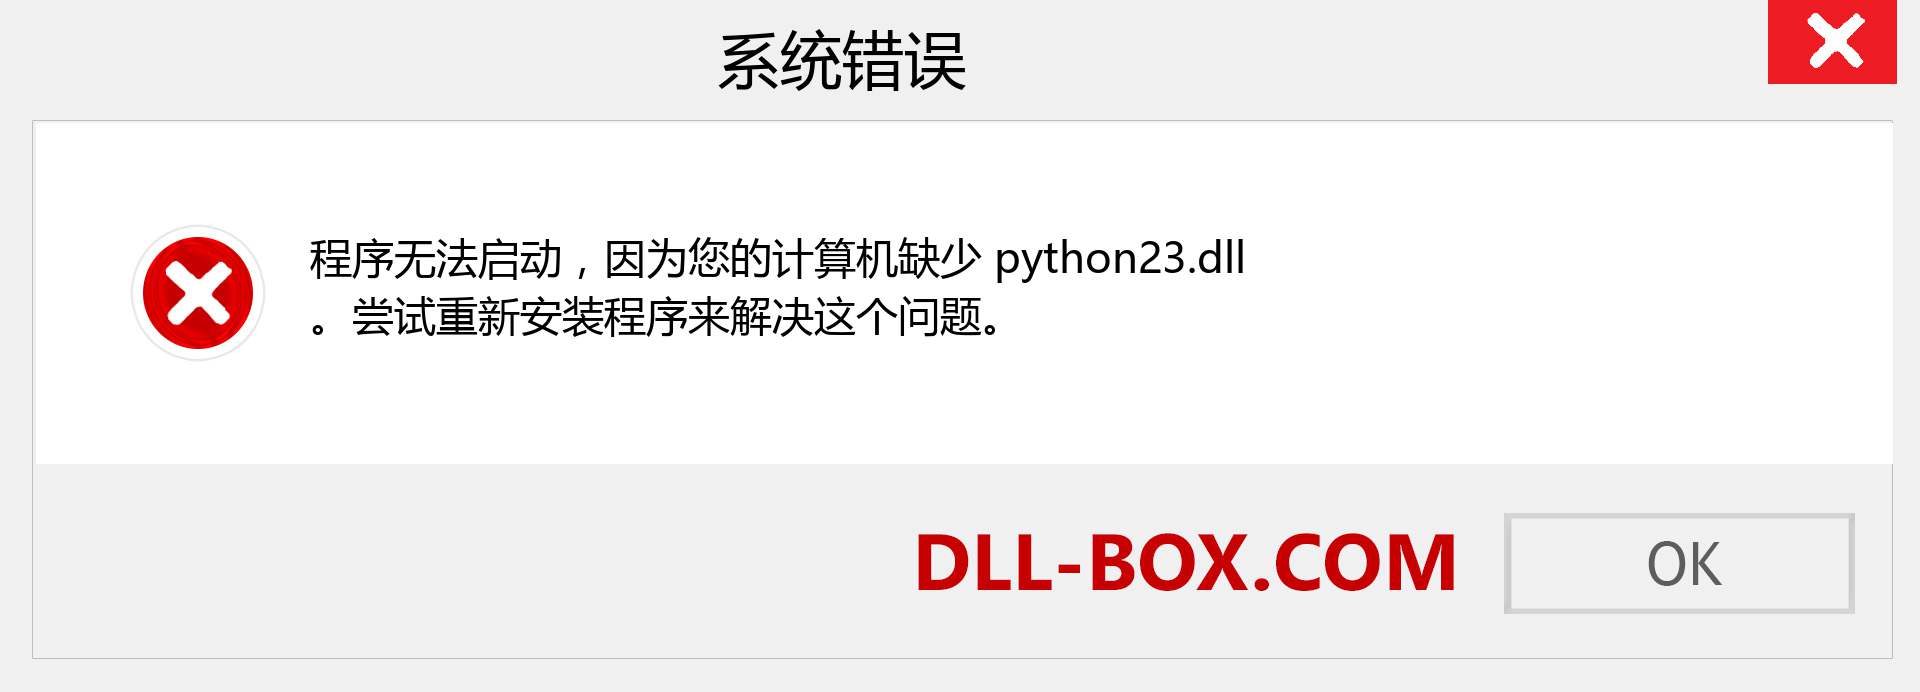 python23.dll 文件丢失？。 适用于 Windows 7、8、10 的下载 - 修复 Windows、照片、图像上的 python23 dll 丢失错误